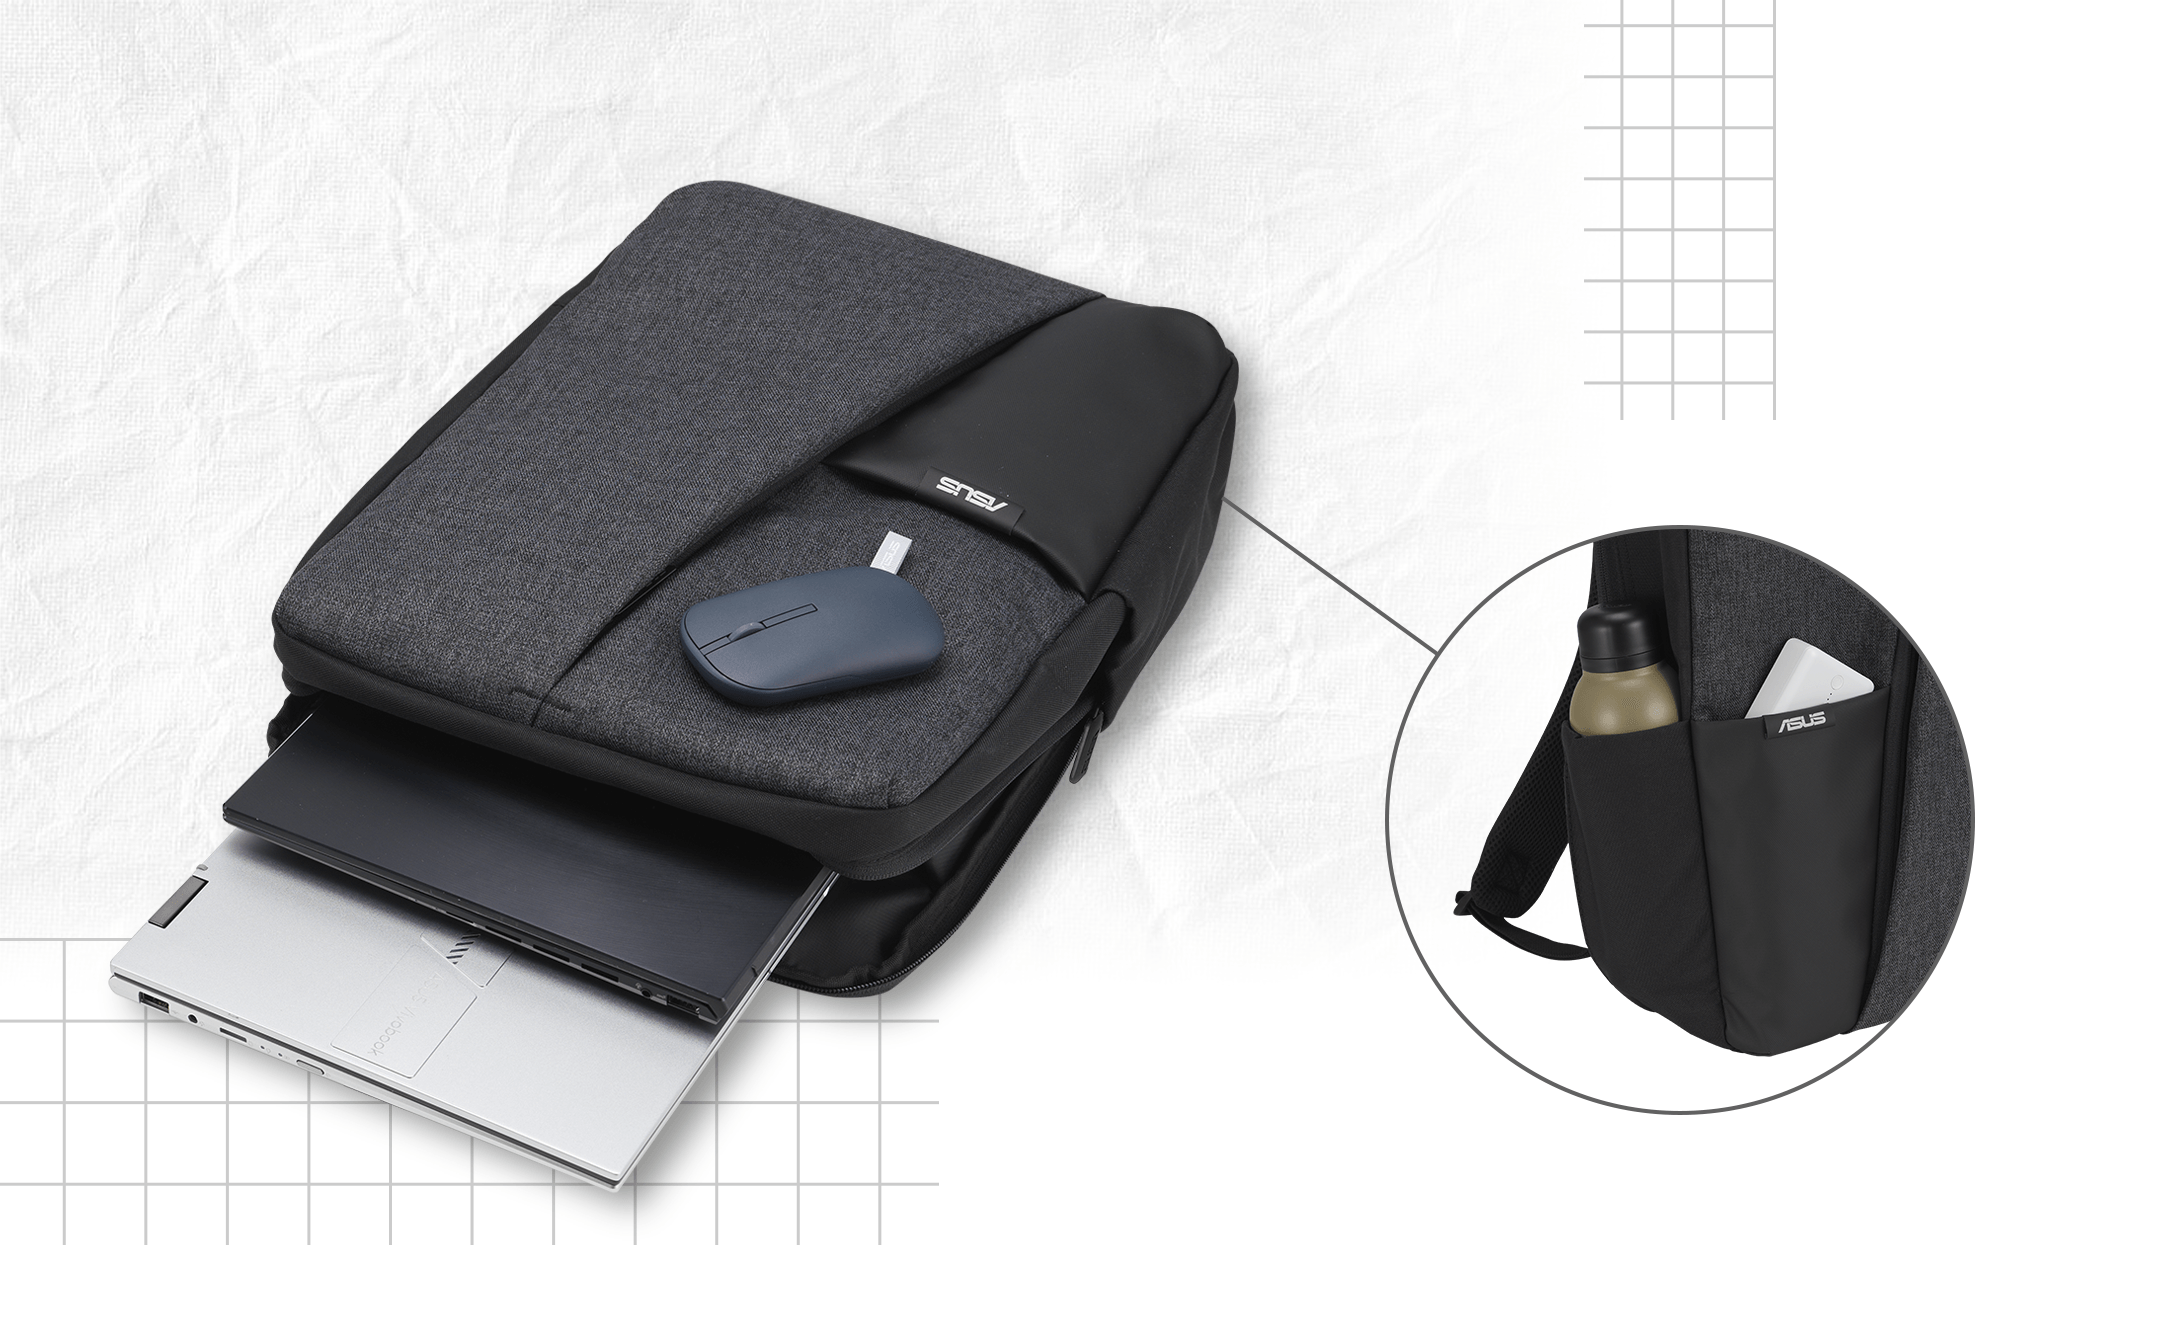 Mochila ASUS AP4600 com dois portáteis e um rato. As imagens pequenas mostram o bolso lateral da mochila com uma garrafa de água, bem como o bolso frontal com um powerbank portátil.